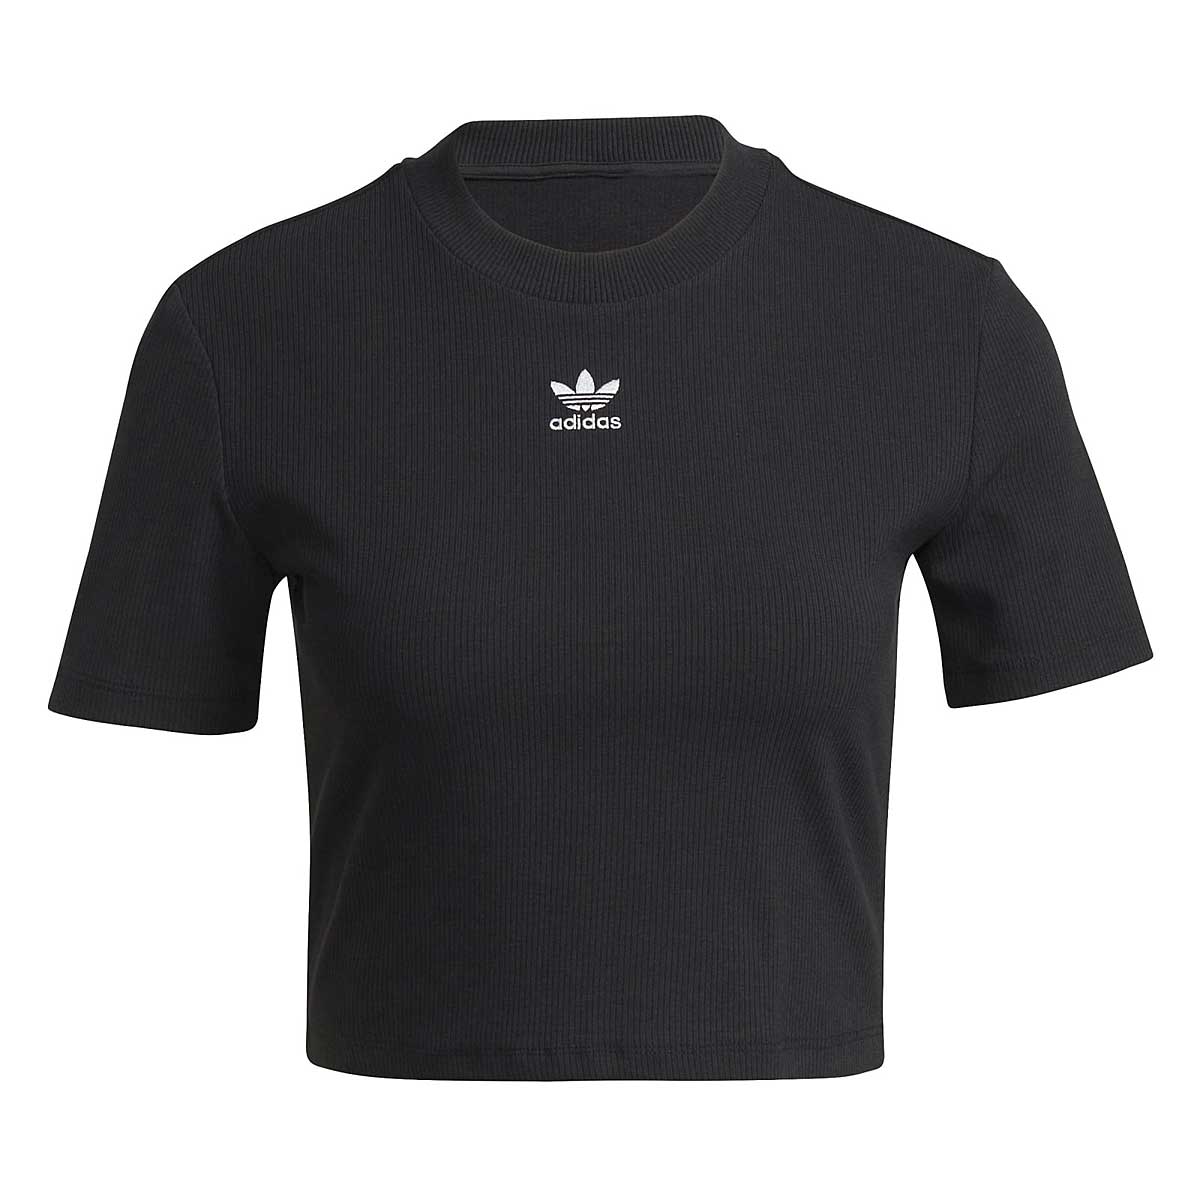 Adidas Originals Cropped T-Shirt W, Black